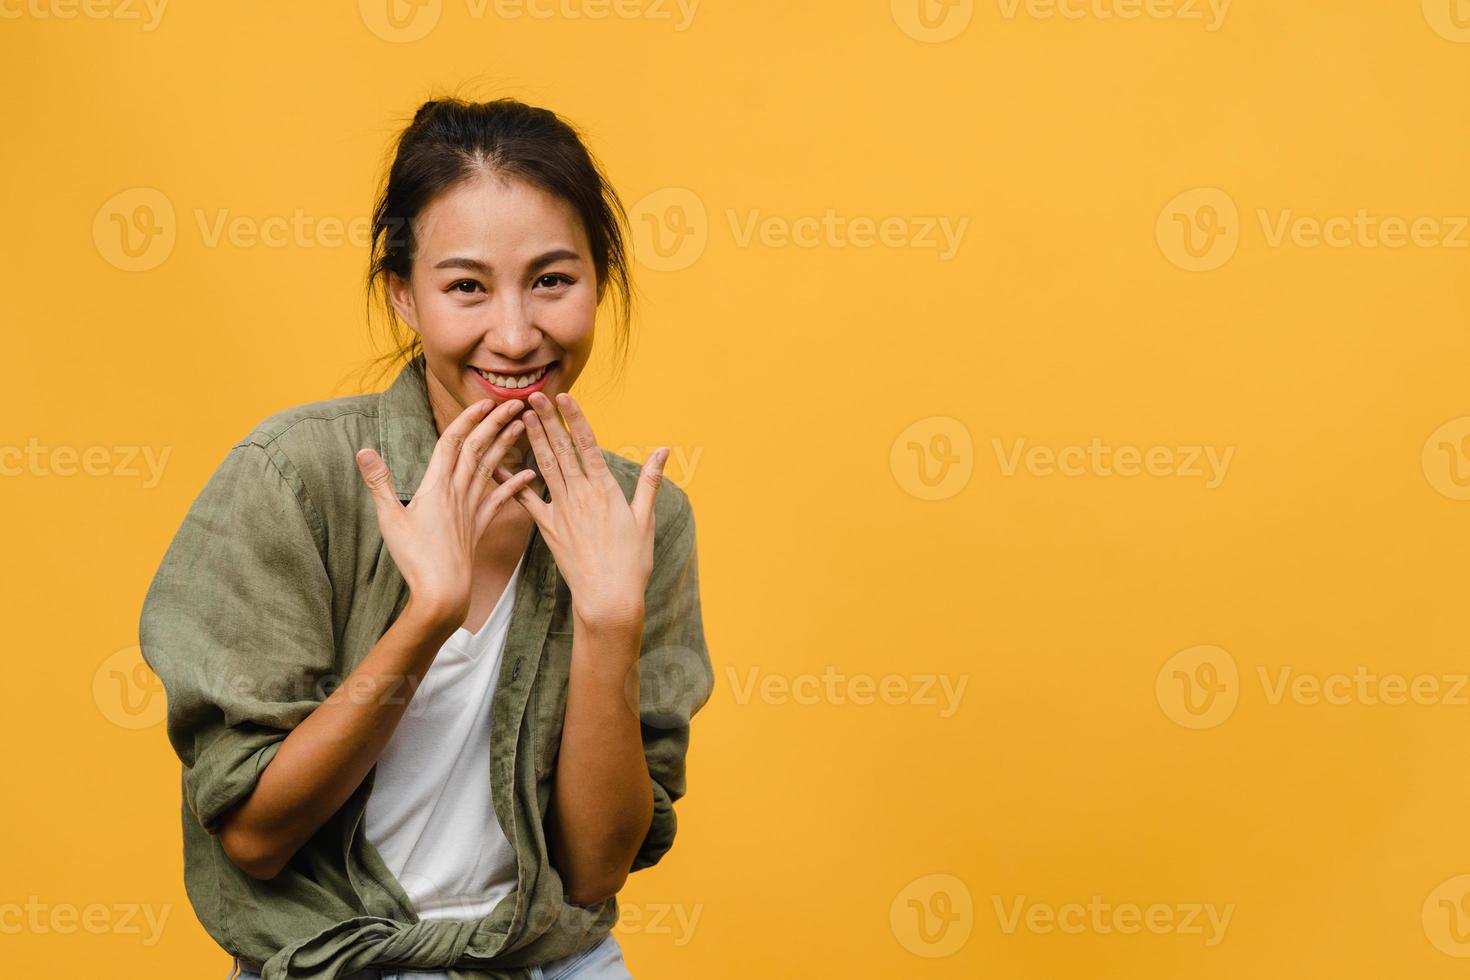 Jovencita asiática con expresión positiva, sonrisa amplia, vestida con ropa casual y mirando a cámara sobre fondo amarillo. feliz adorable mujer alegre se regocija con el éxito. concepto de expresión facial. foto